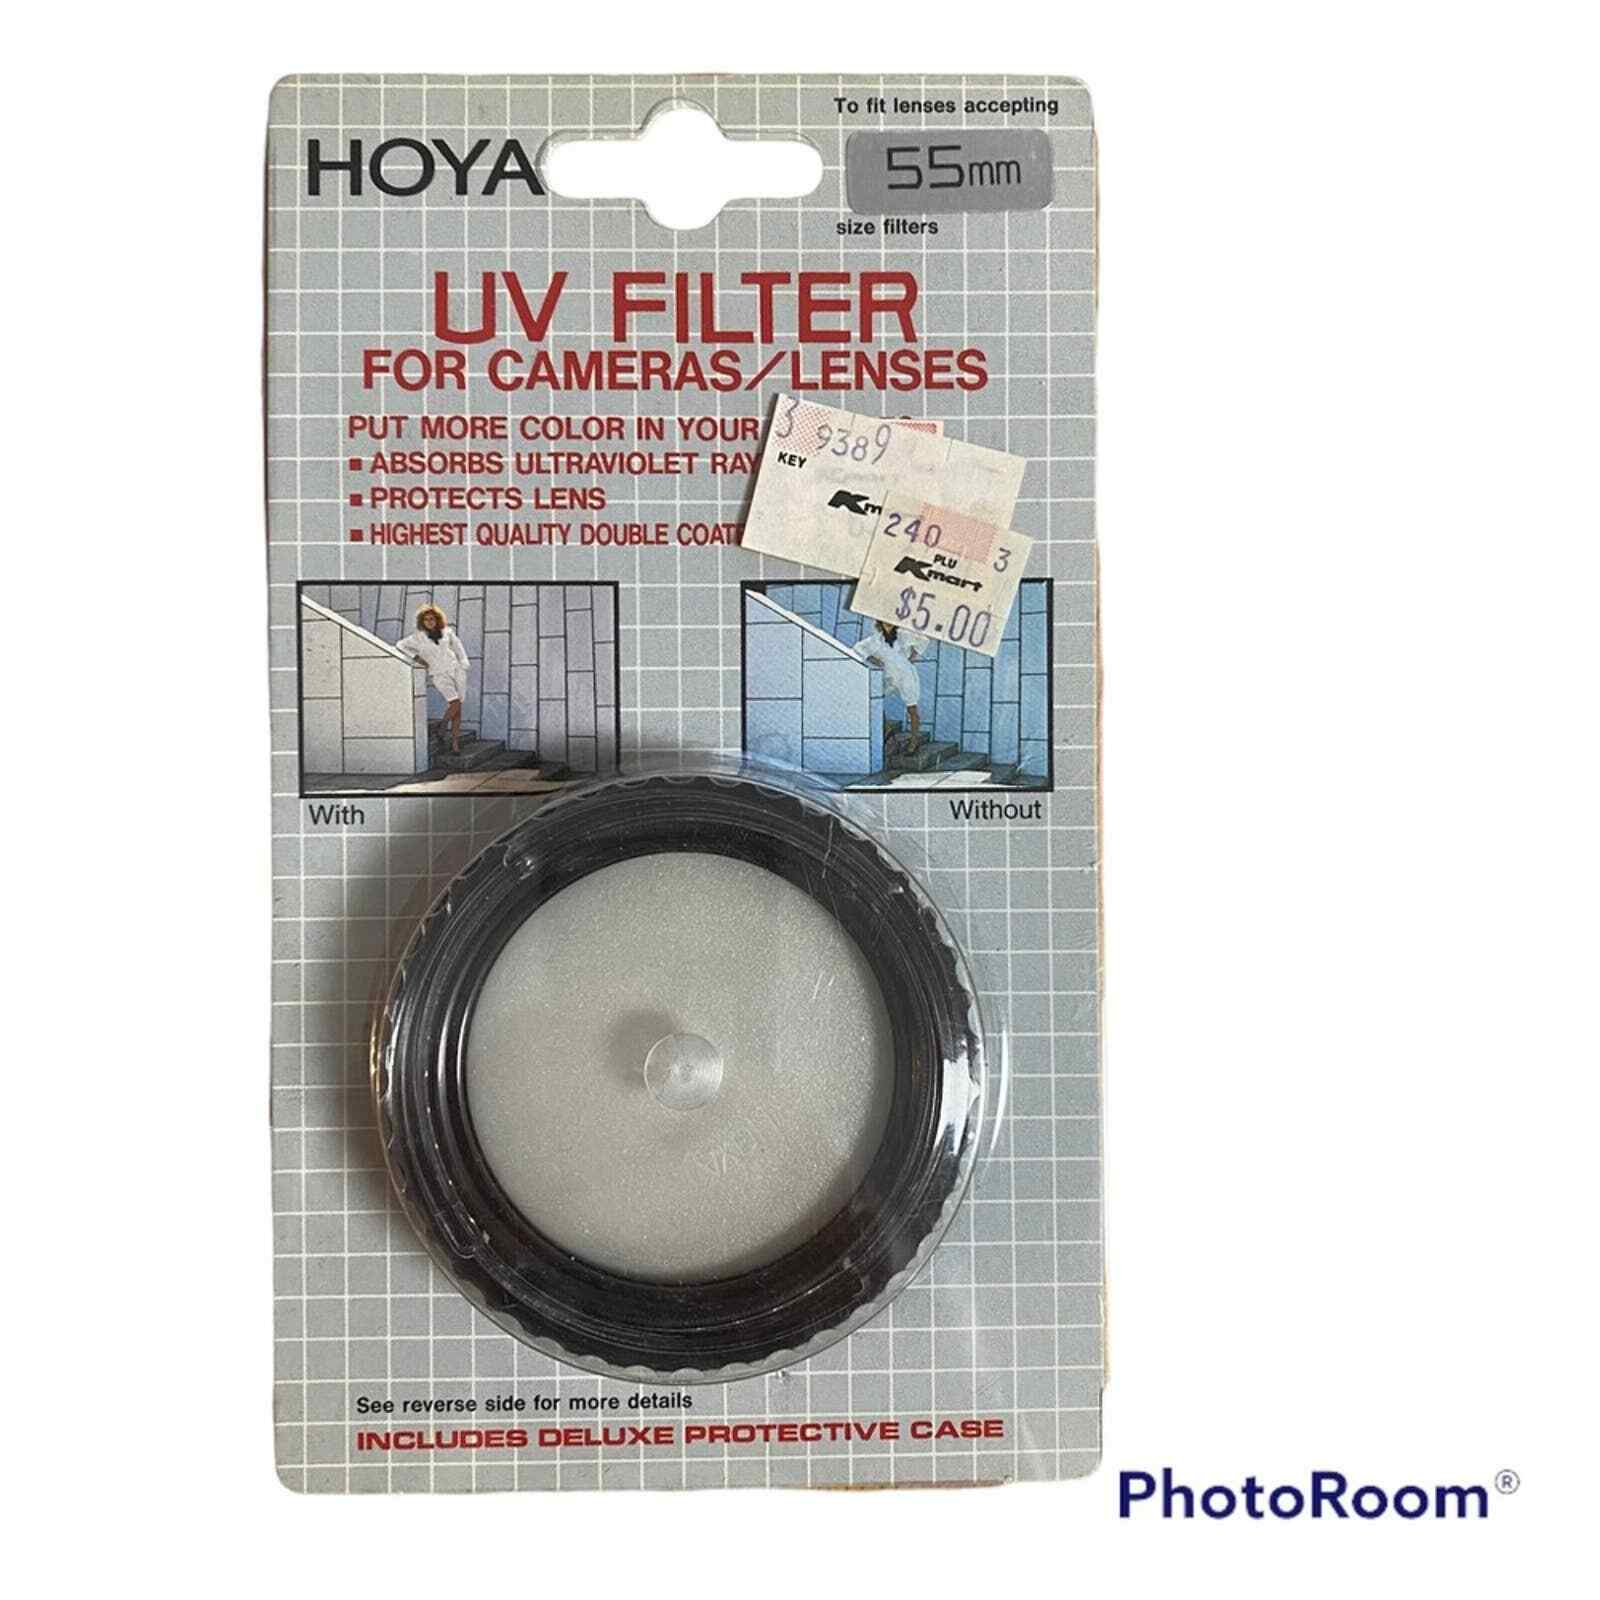 Hoya vintage camera uv lense filter 55mm